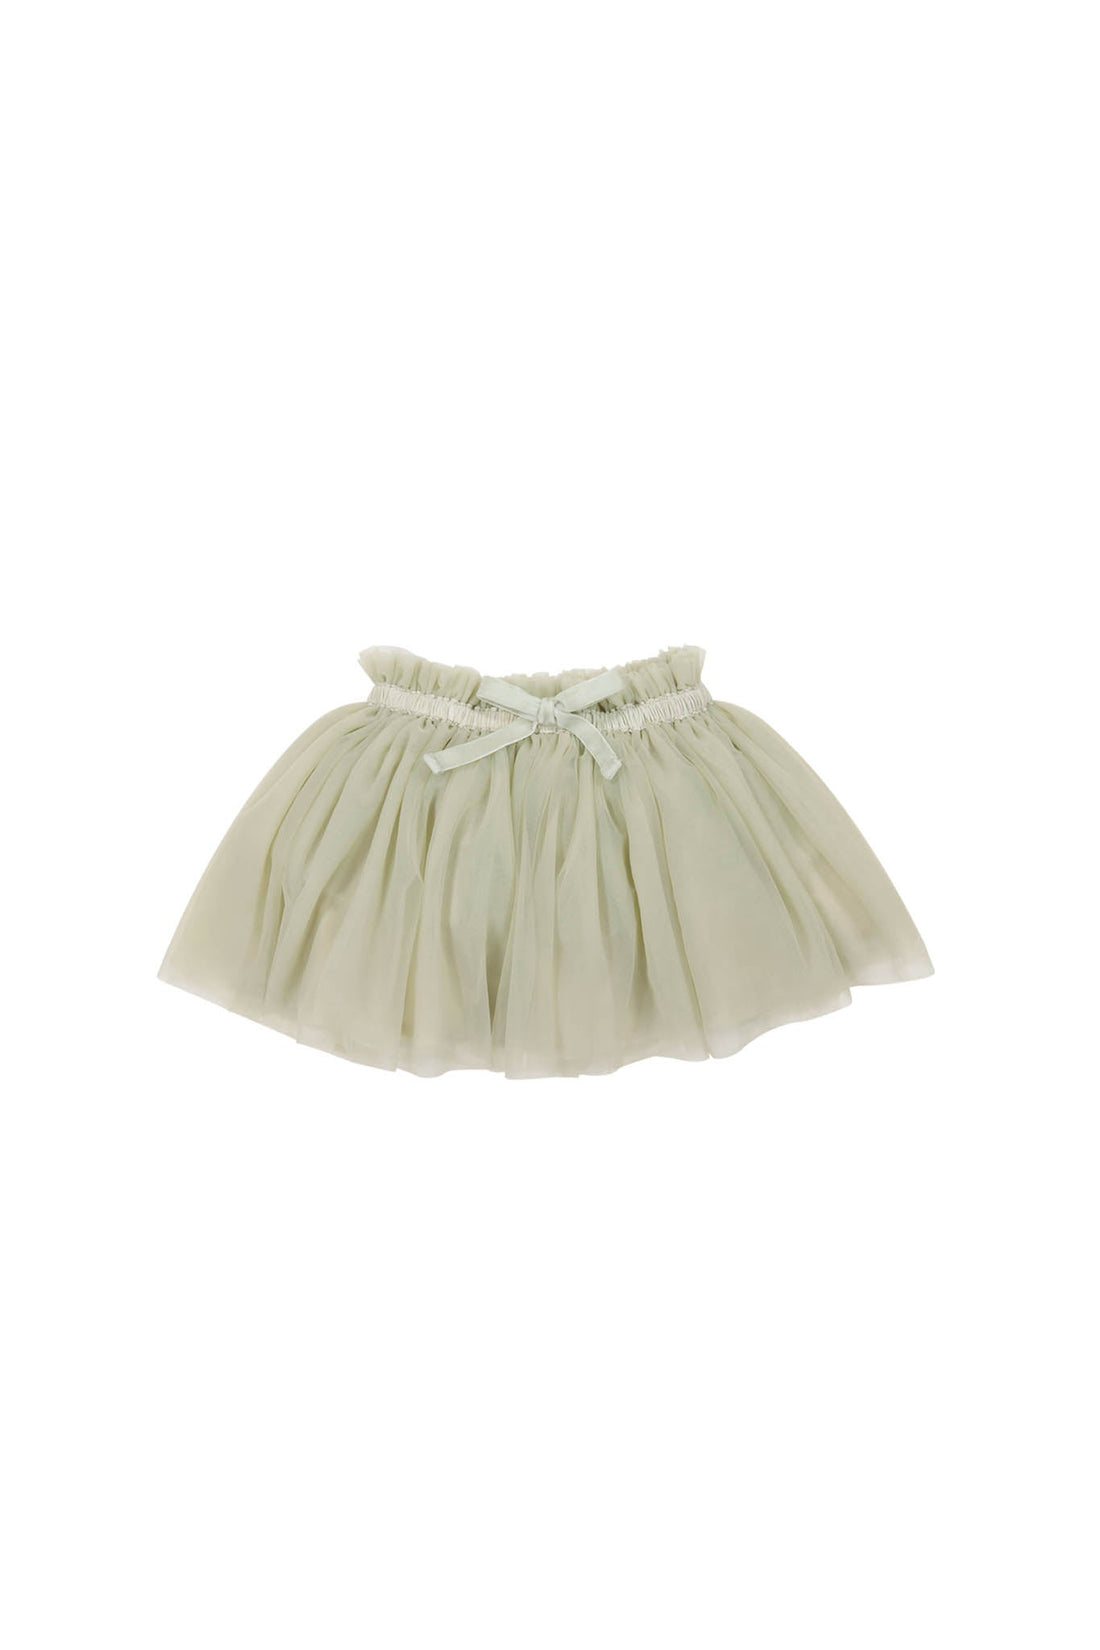 Classic Tutu Skirt - Honeydew Childrens Skirt from Jamie Kay USA